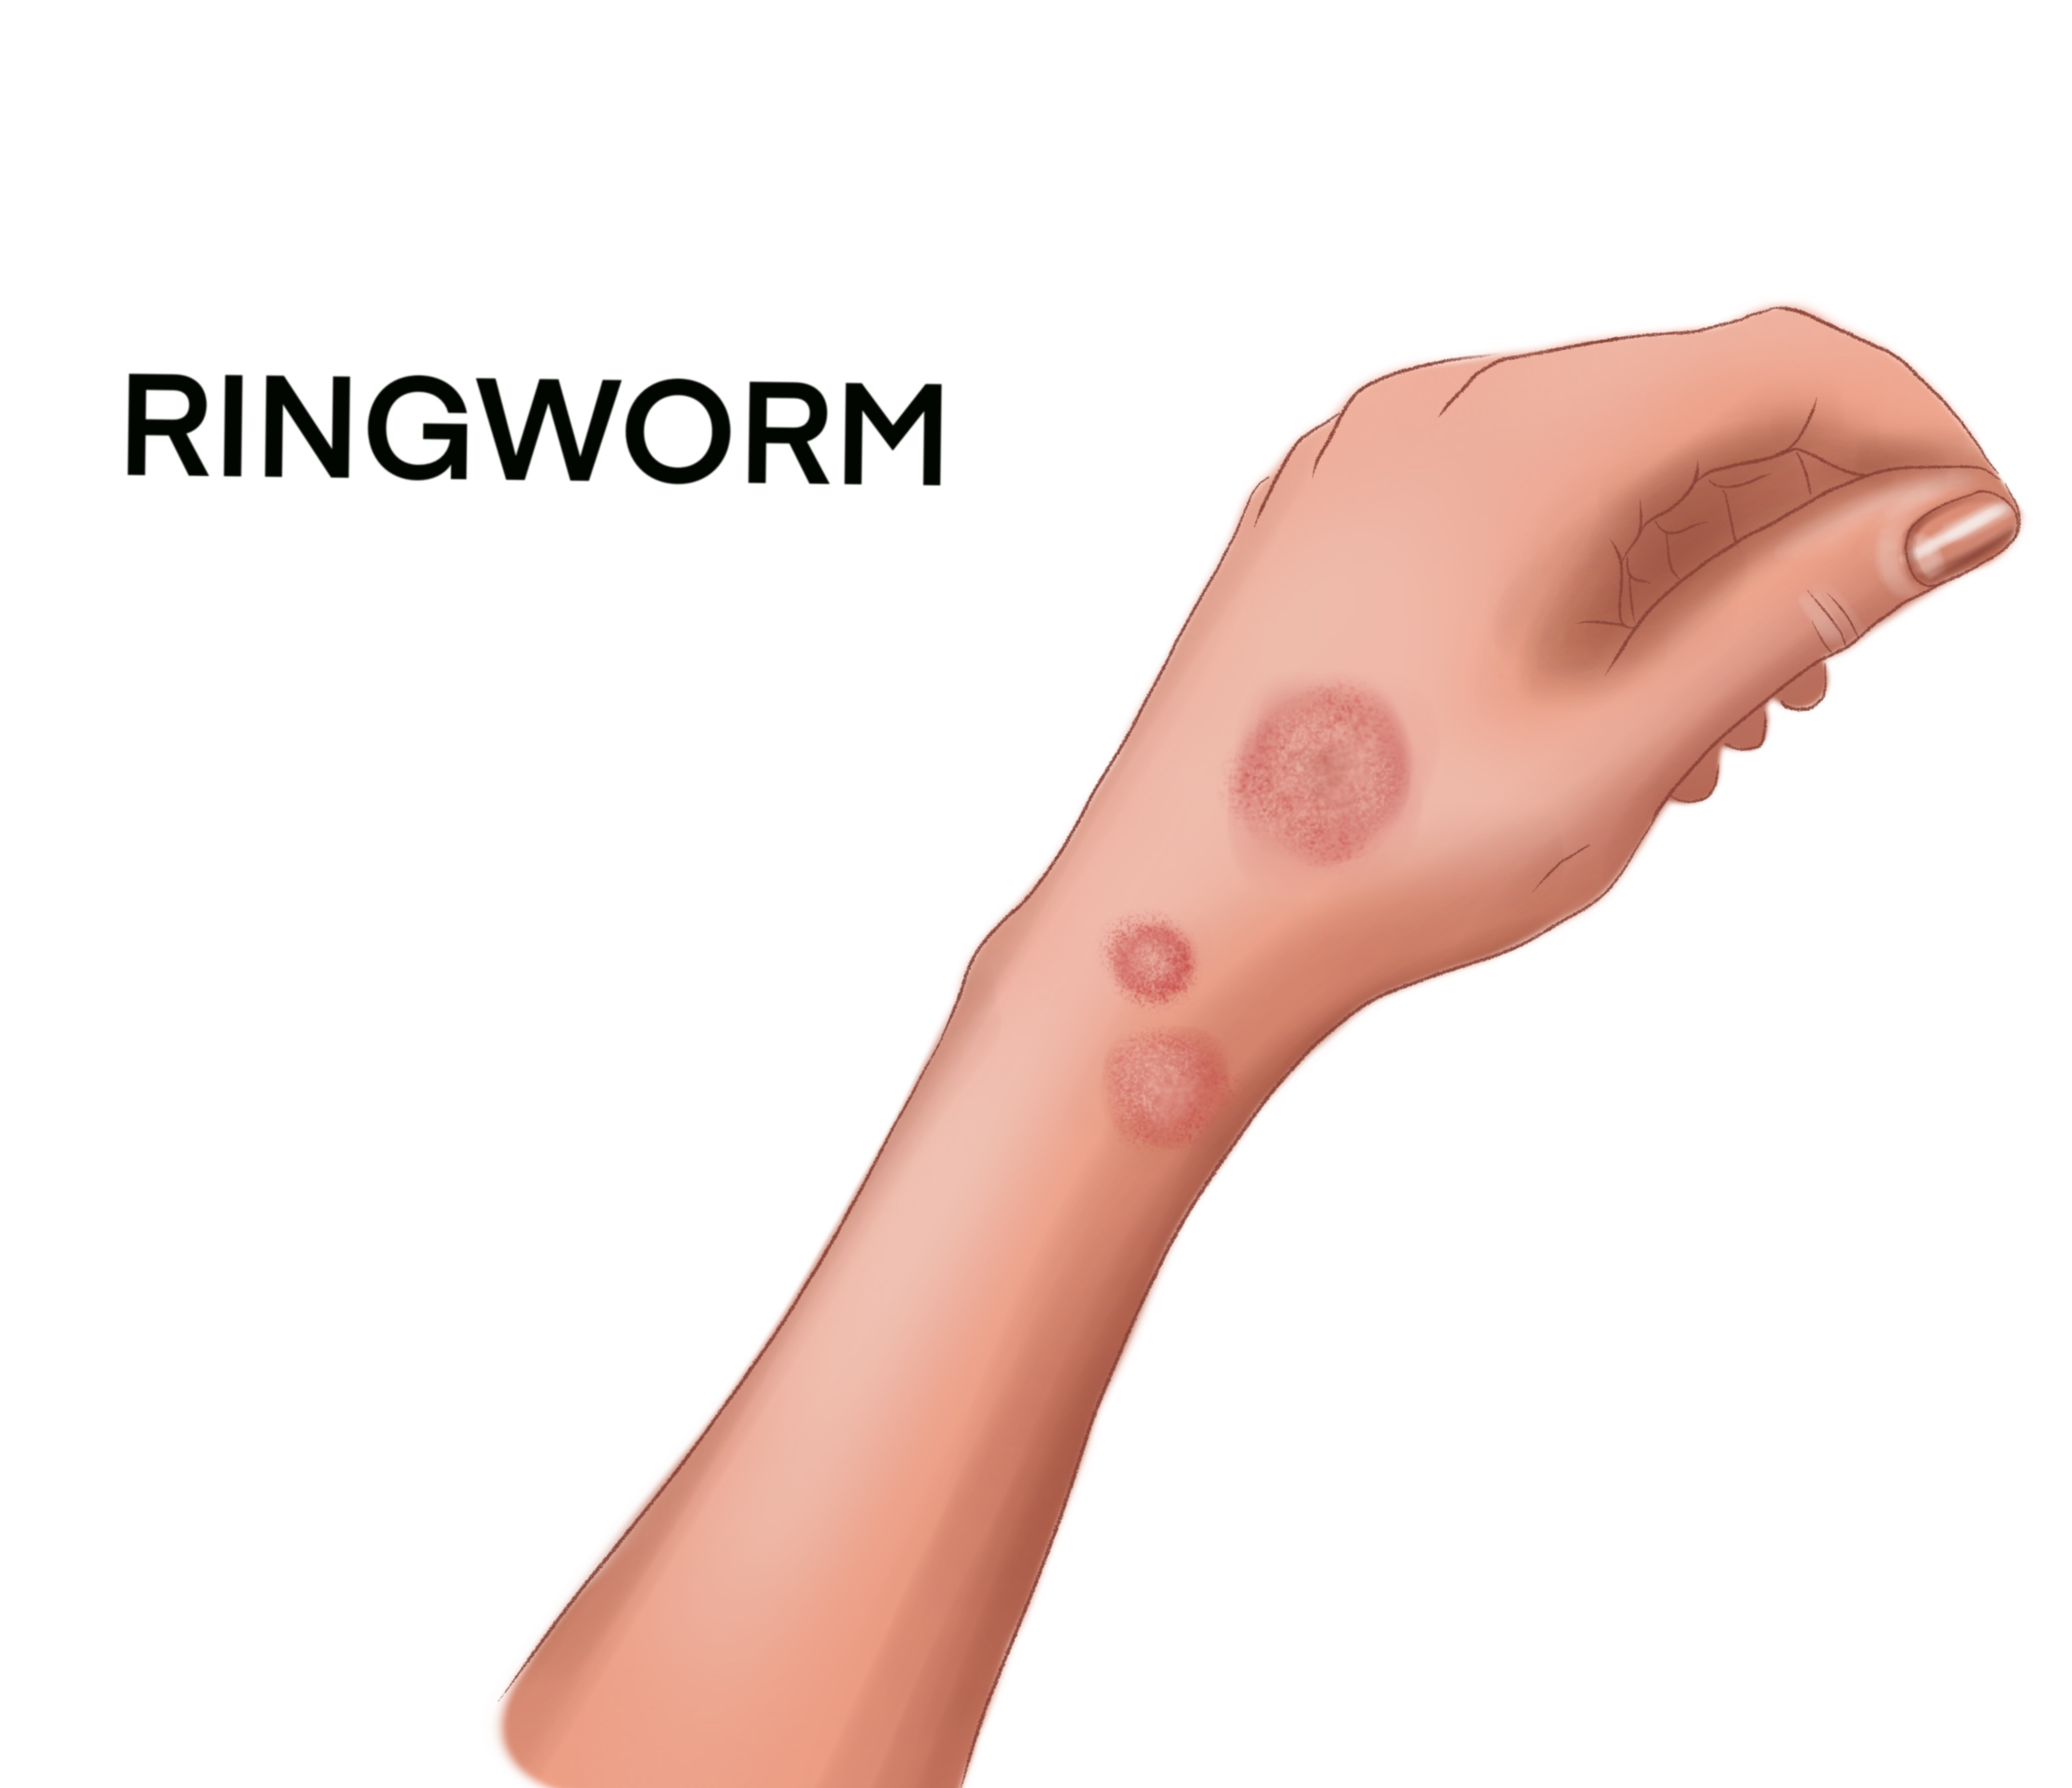 1-Ringworm-c2593c0b-5814-4304-b09e-d2d3931f99a0.jpg